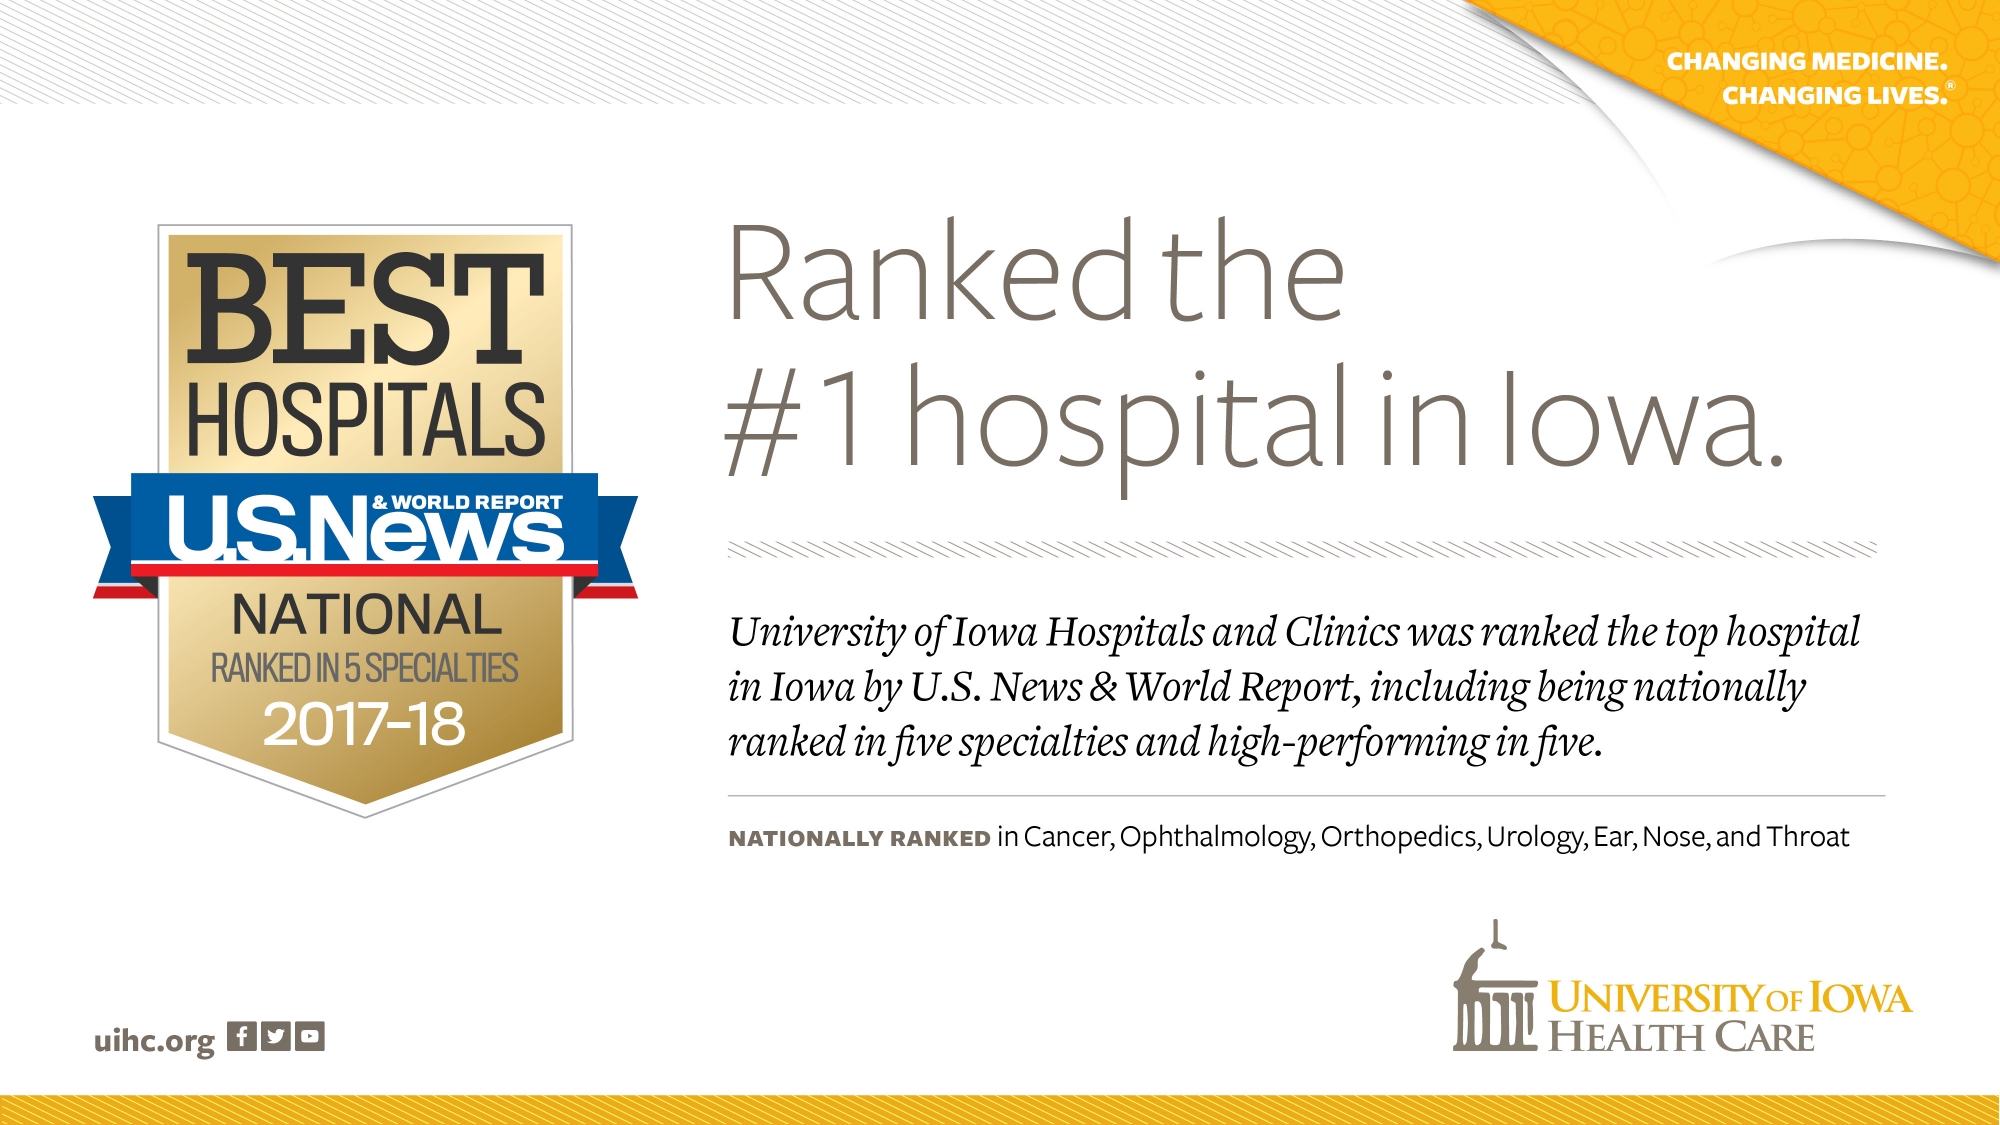 #1 hospital in Iowa